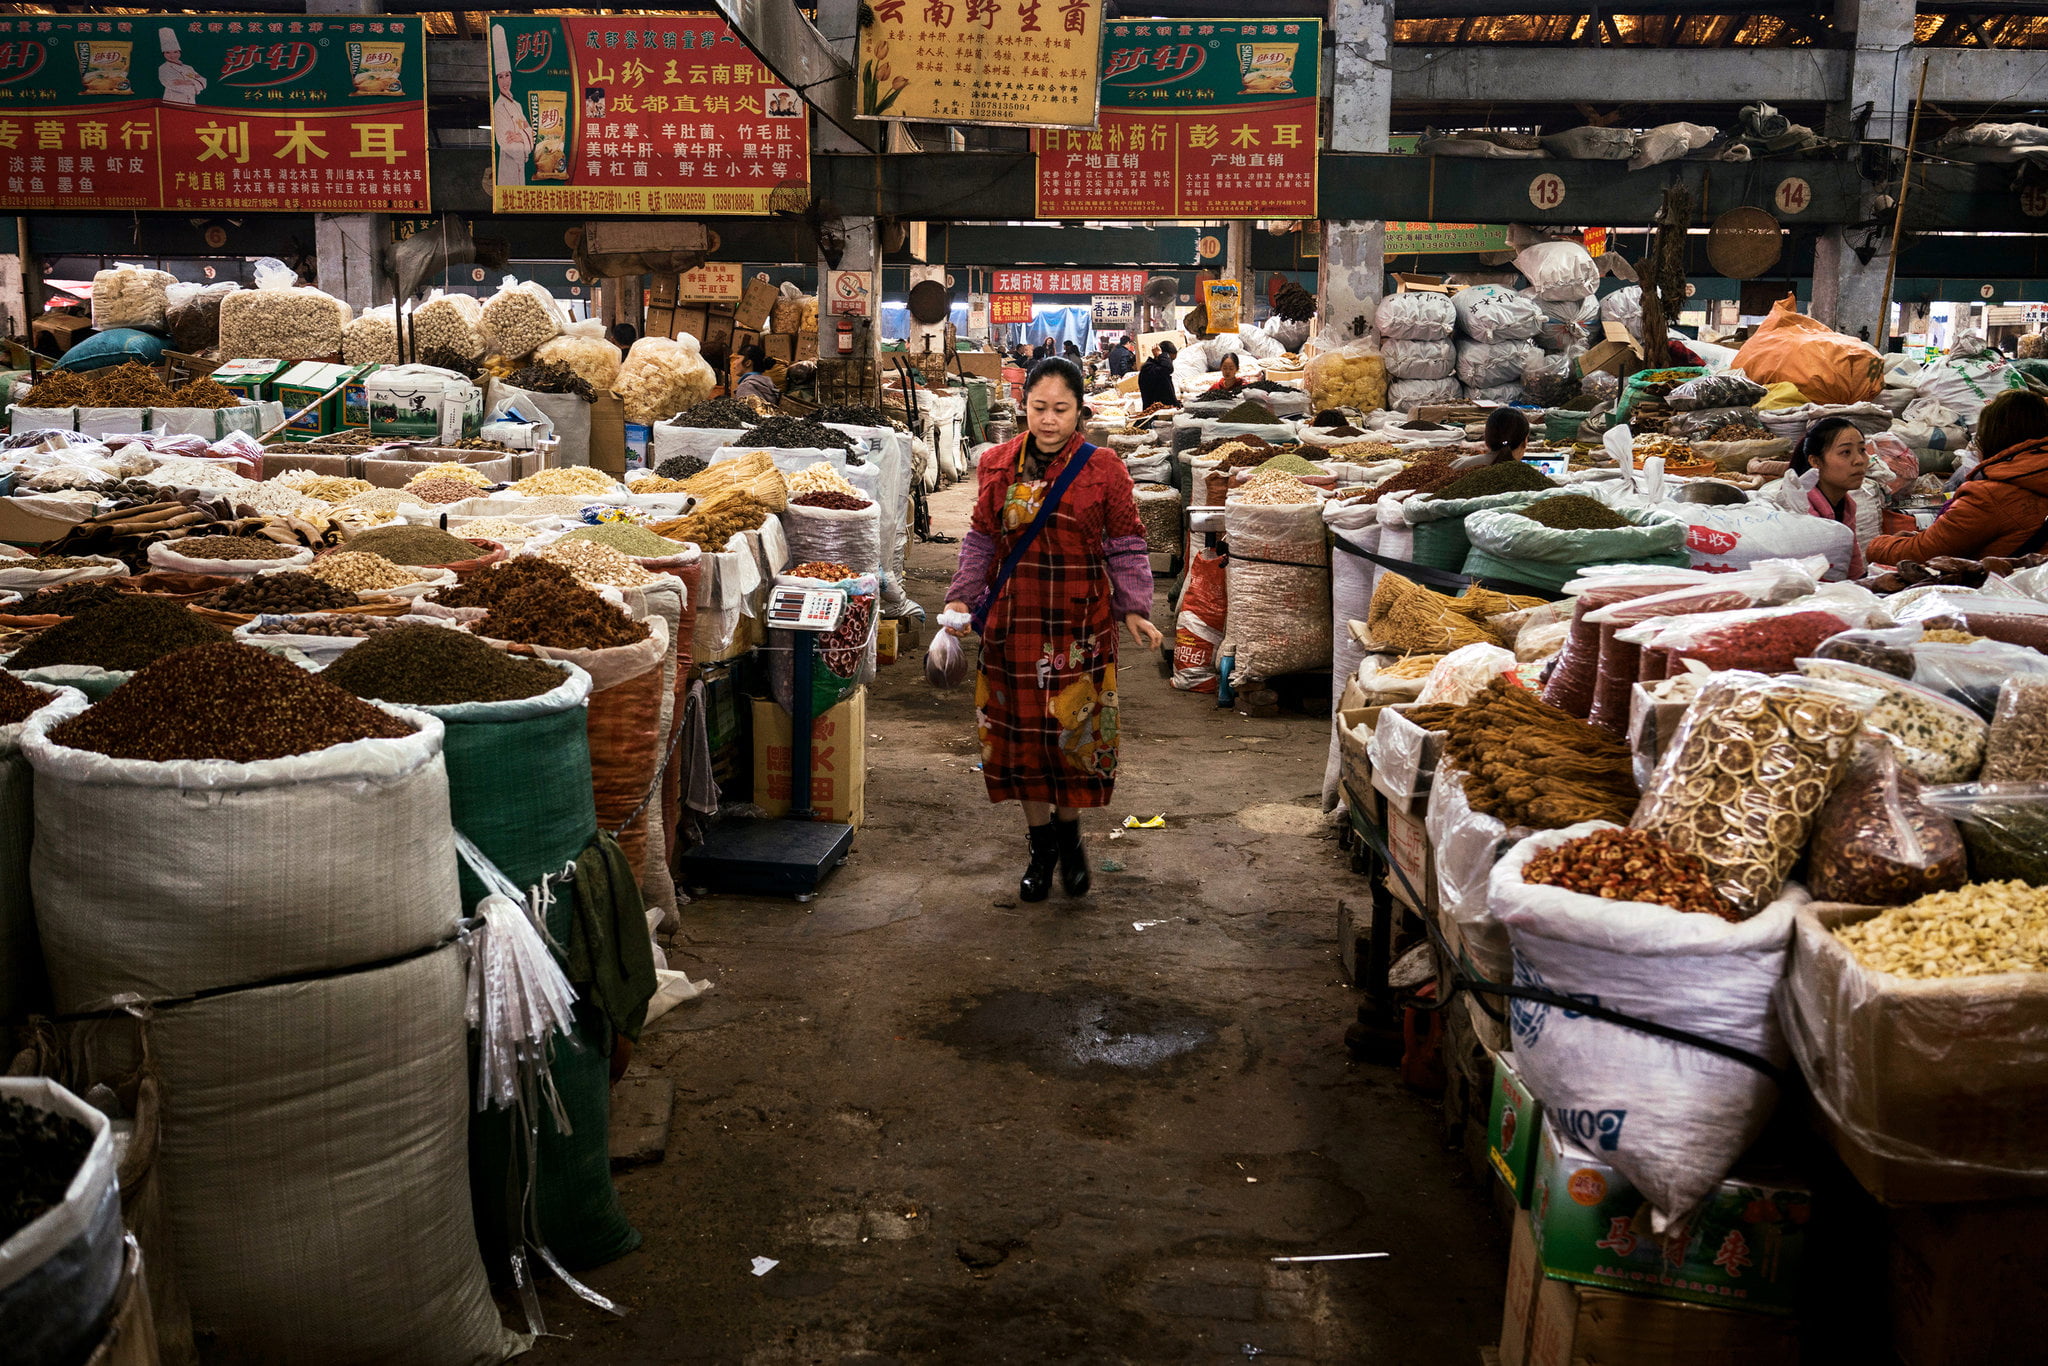 Sichuan spice market